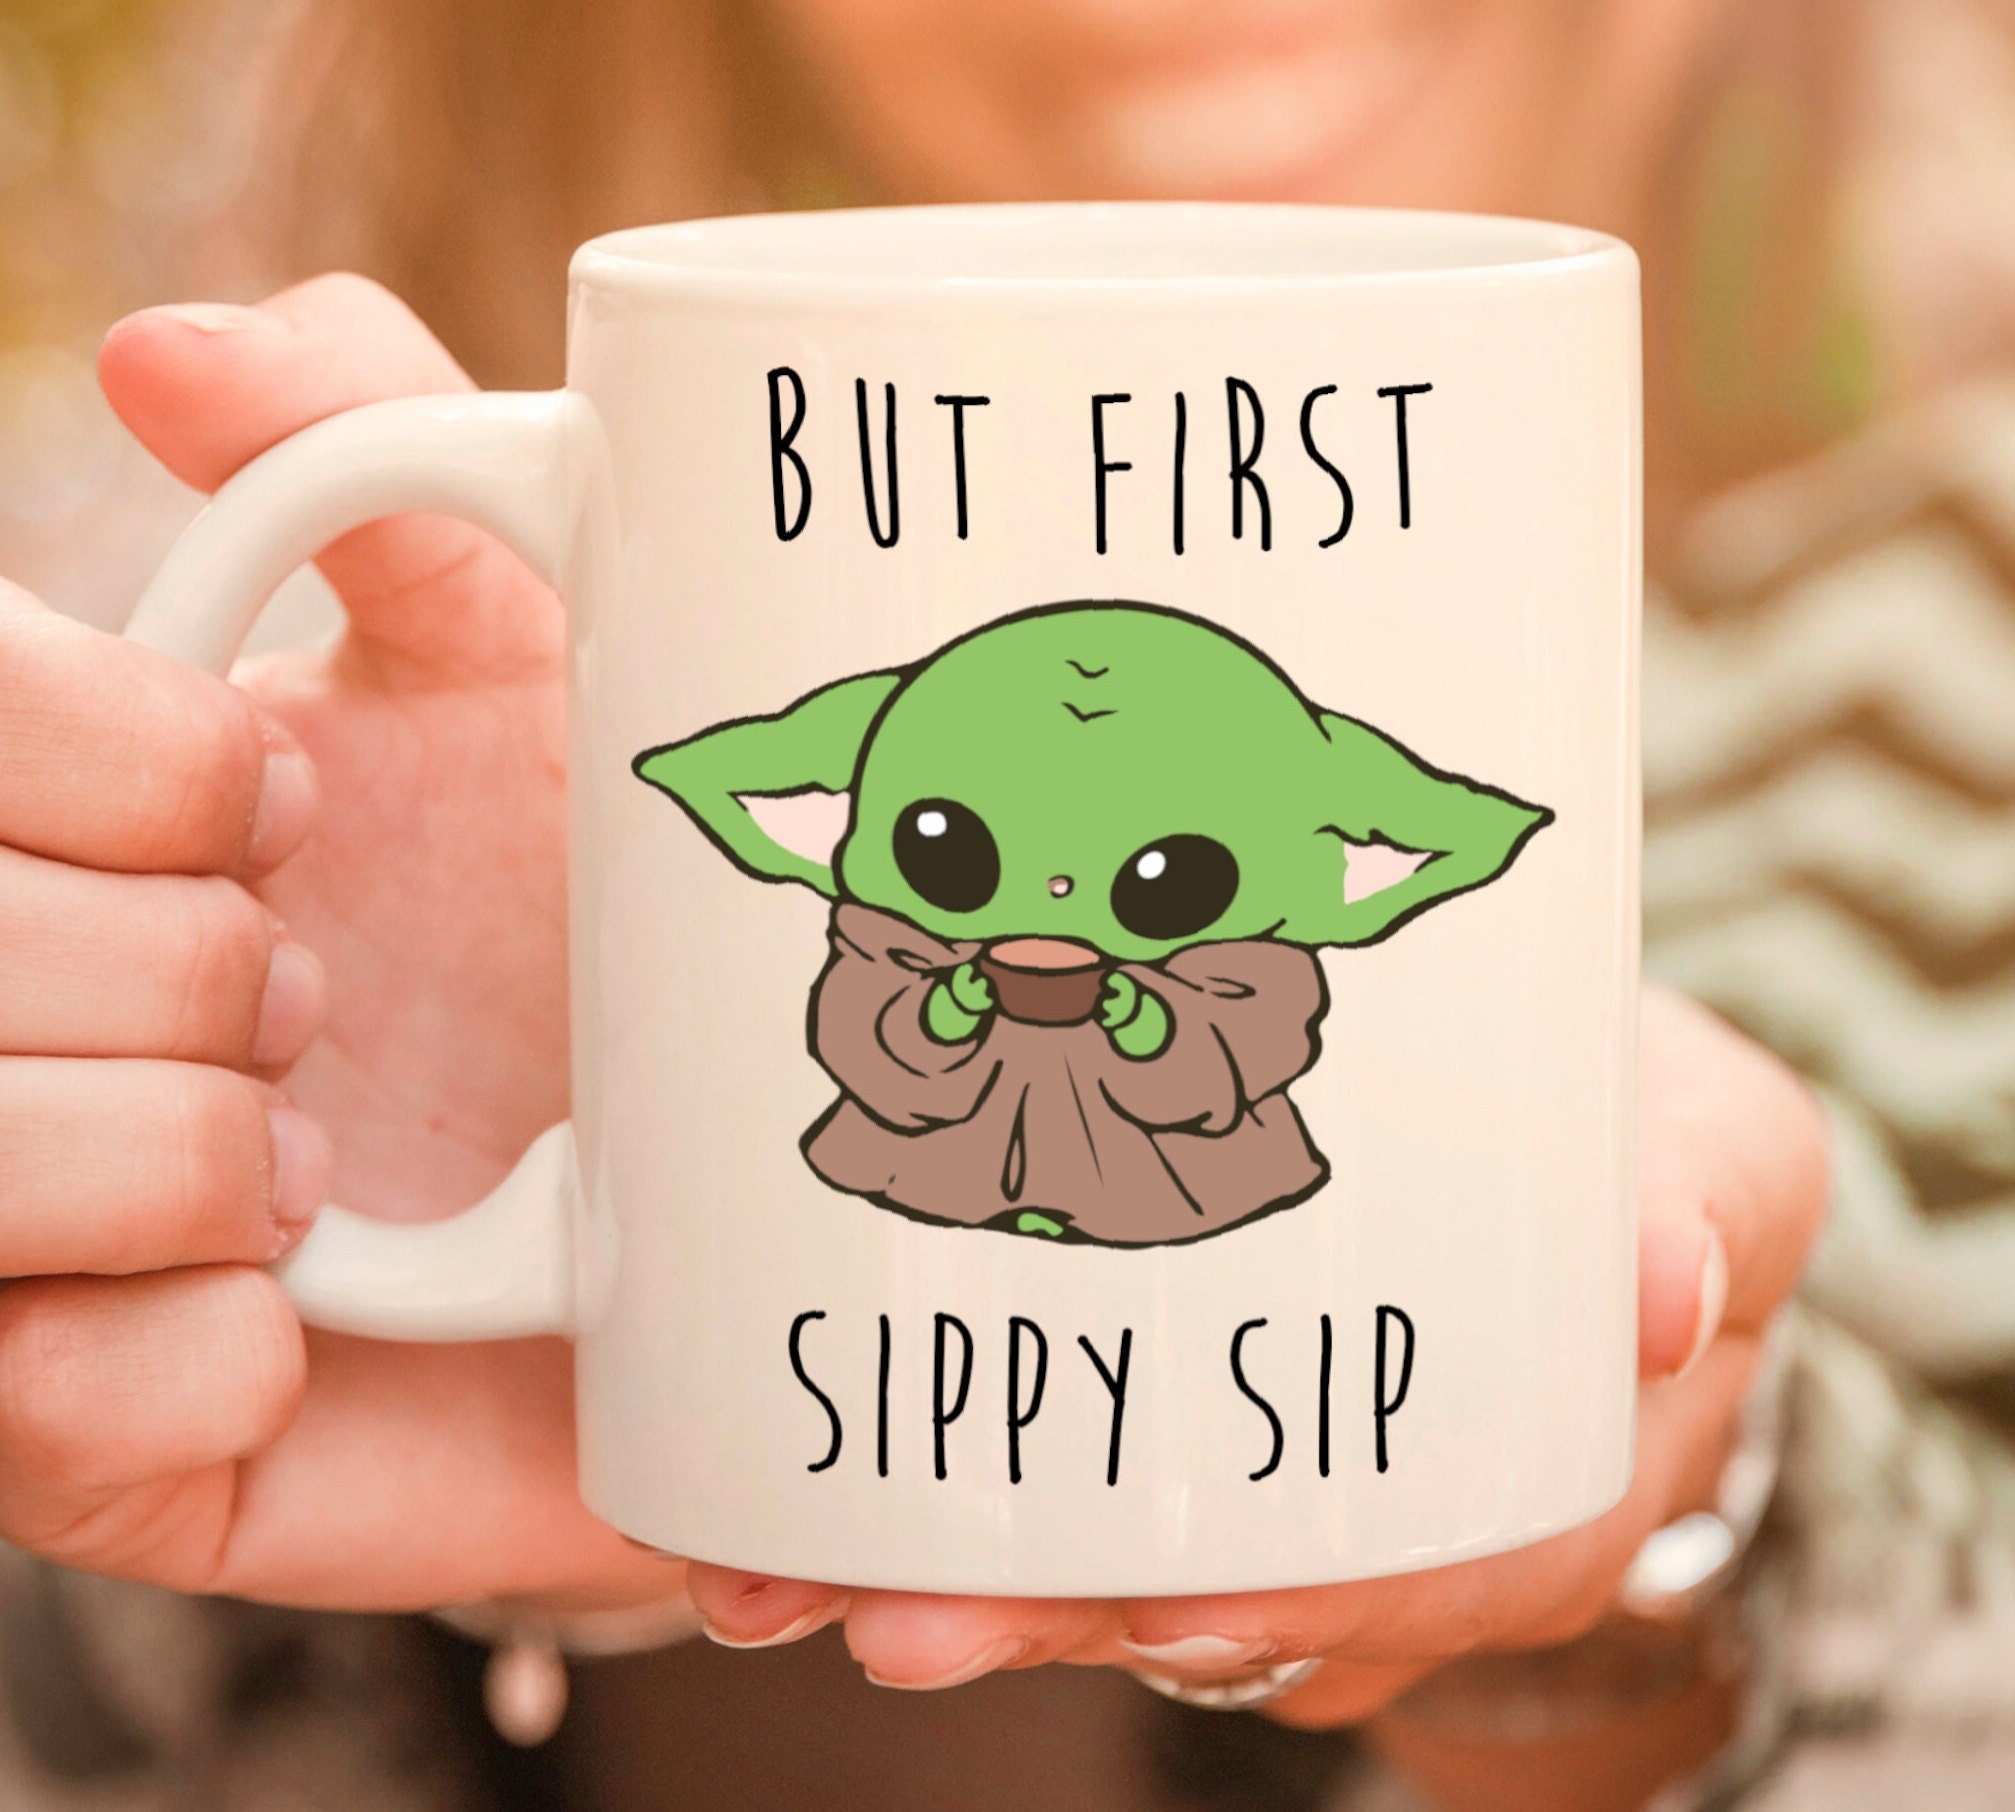 But First Sippy Sip Coffee Mug, Grogu Coffee Mug, Adorable B